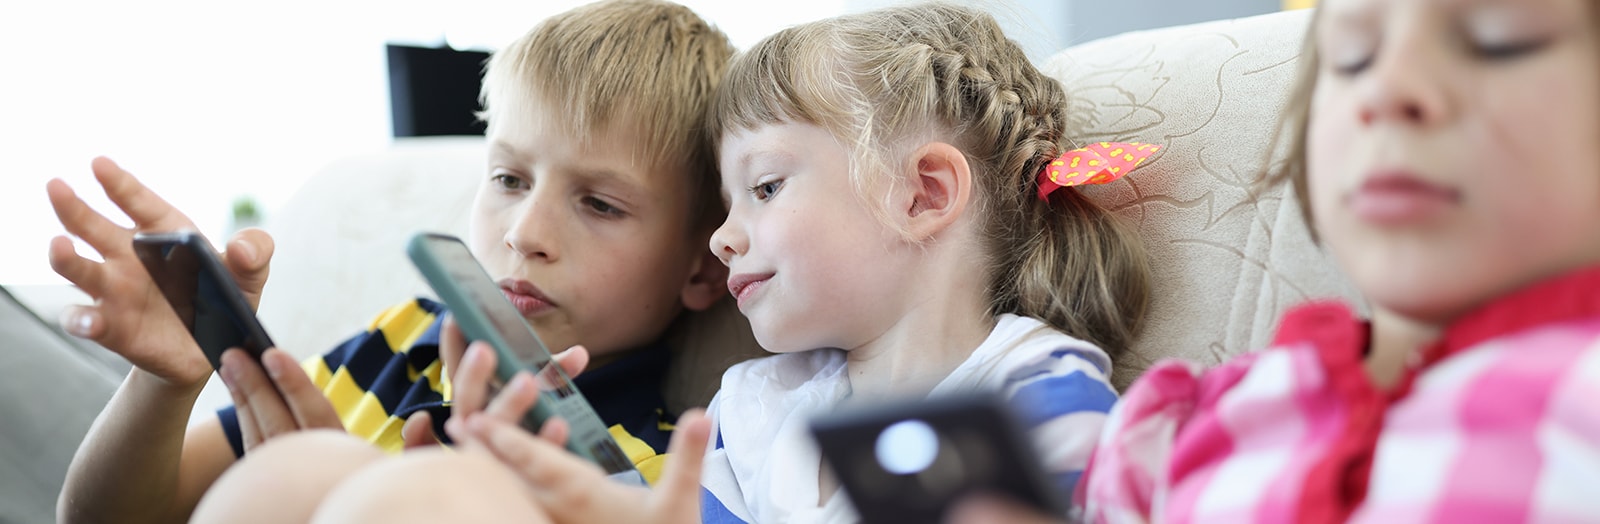 Online tryghed: En guide til opsætning af dine børns devices, sociale medier og spillekonti, så du trygt kan sende dem ud i den online verden. 